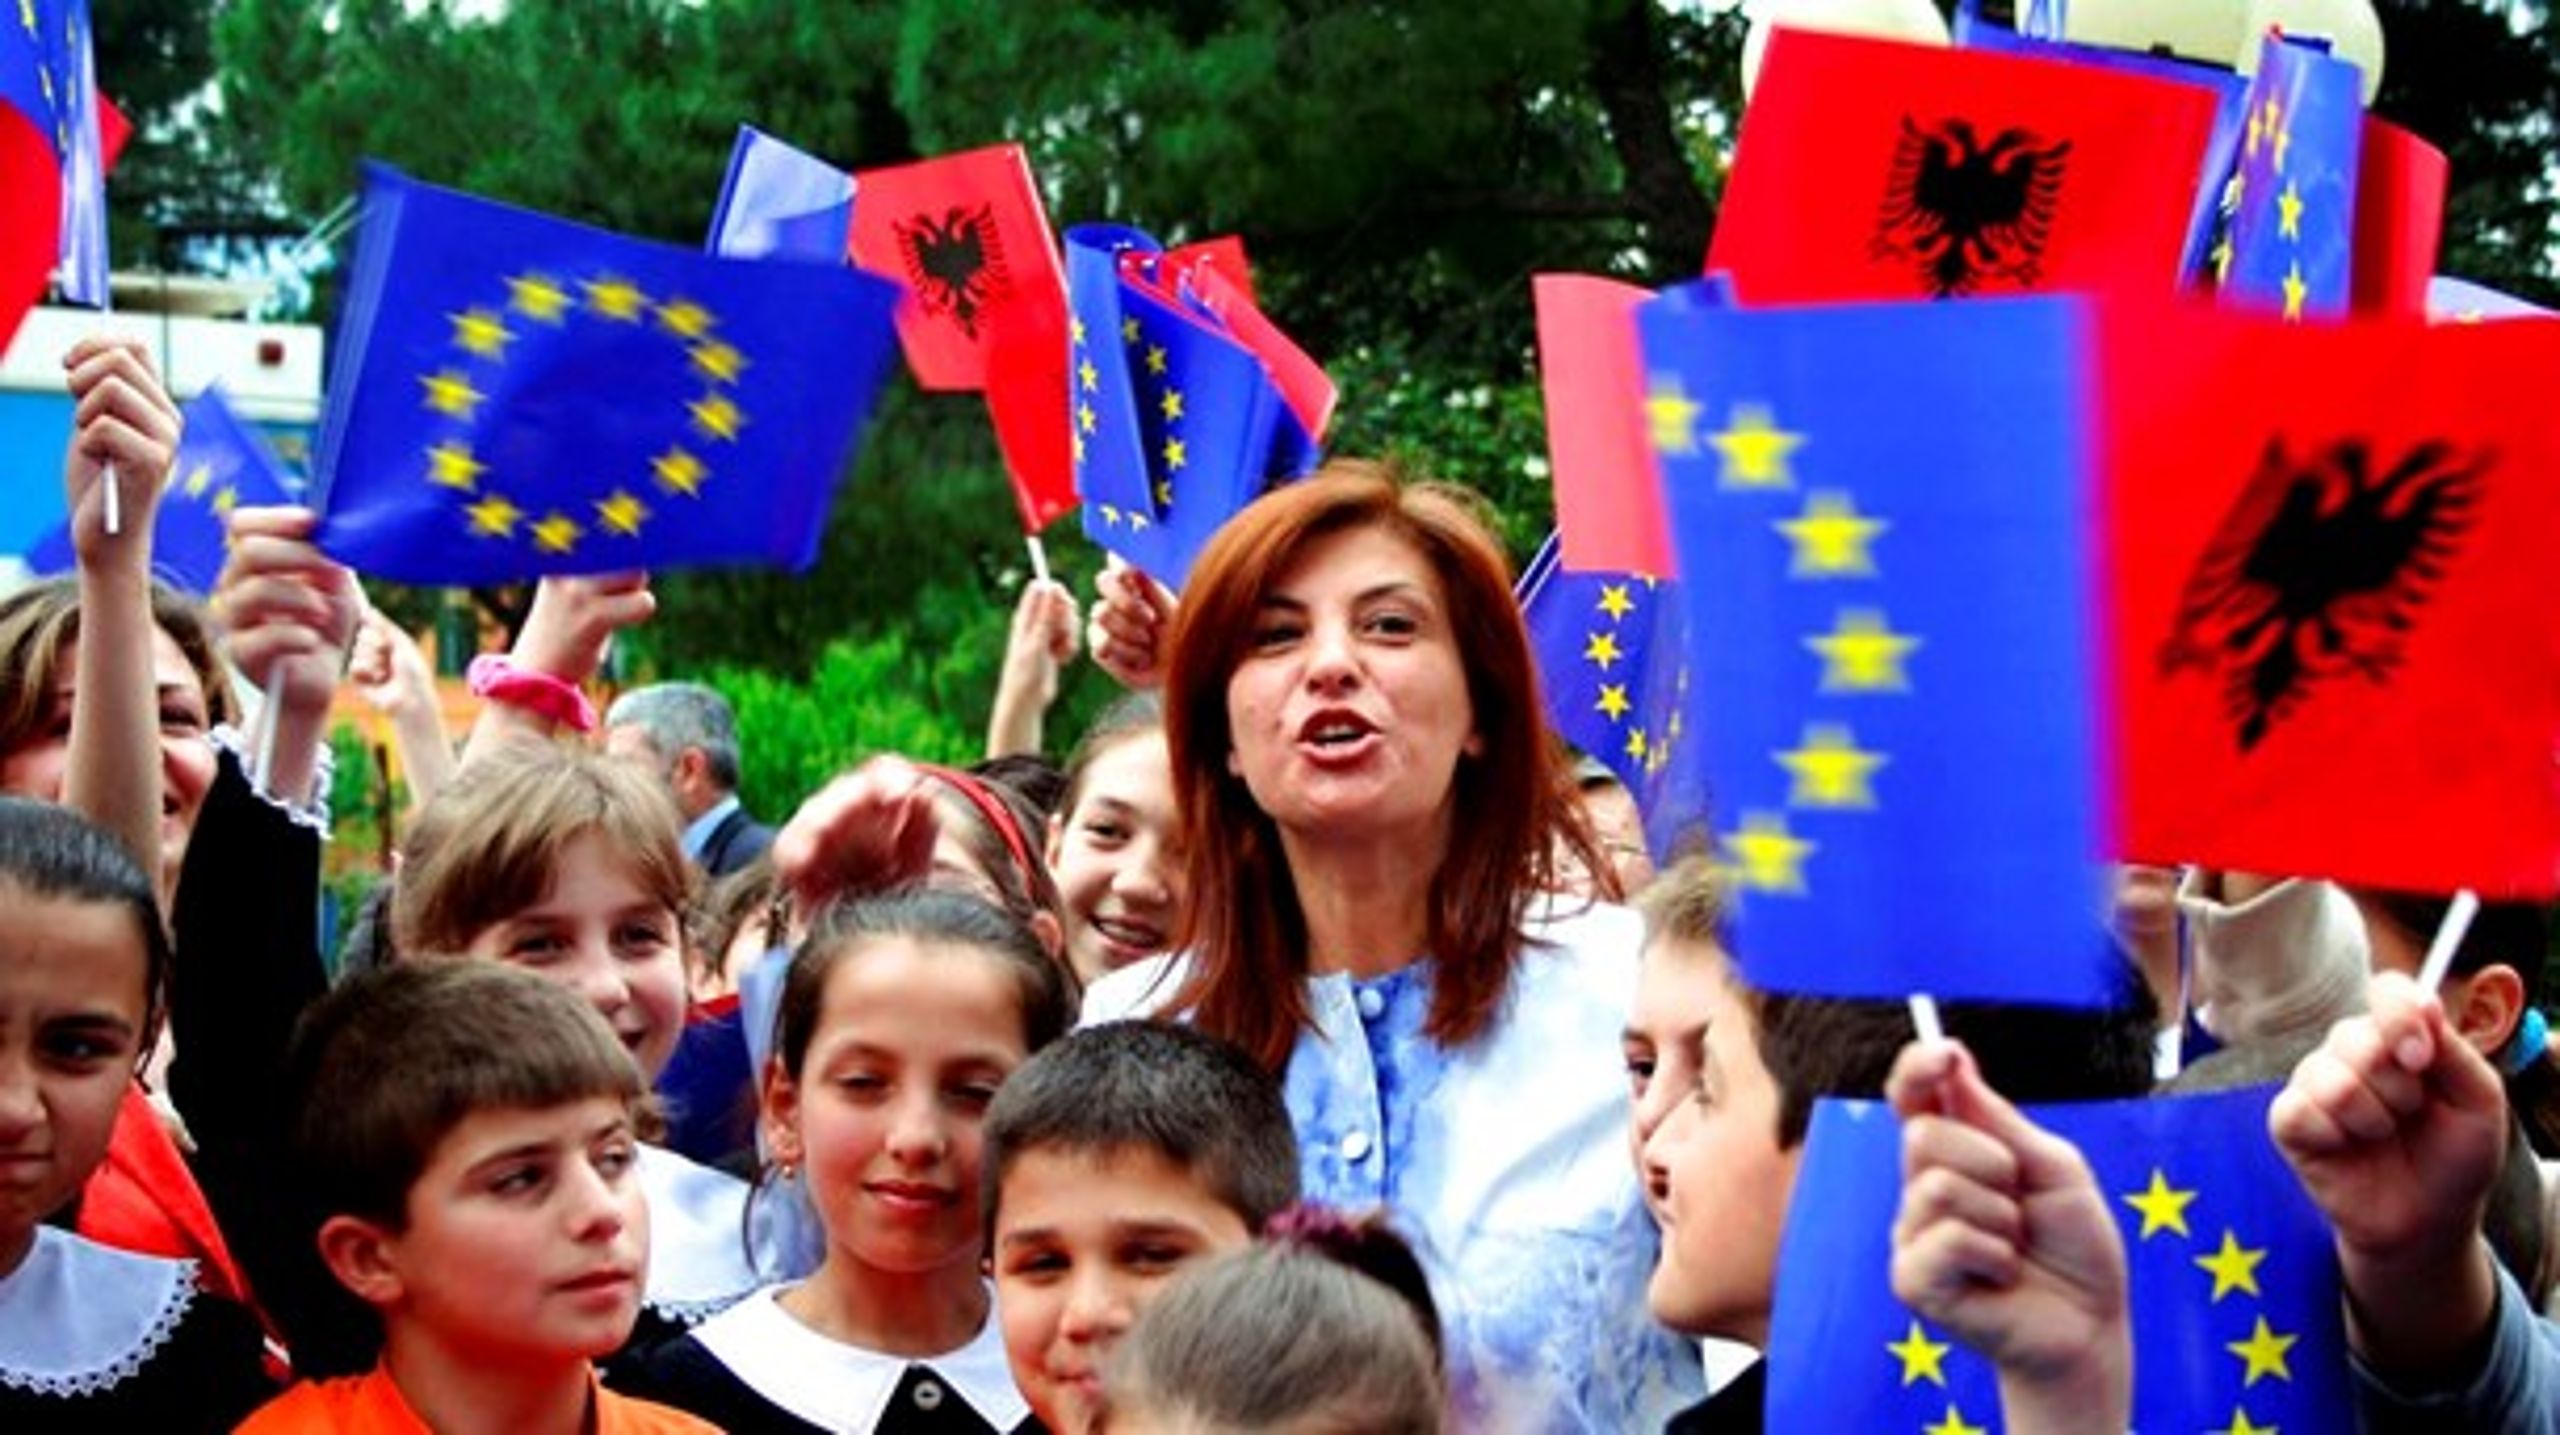 Tirsdag diskuteres det, hvorvidt EU skal påbegynde optagelsesforhandlinger med Albanien og Makedonien. Den danske holdning er kritisk, men regeringens forhandlingsmandat møder kritik.